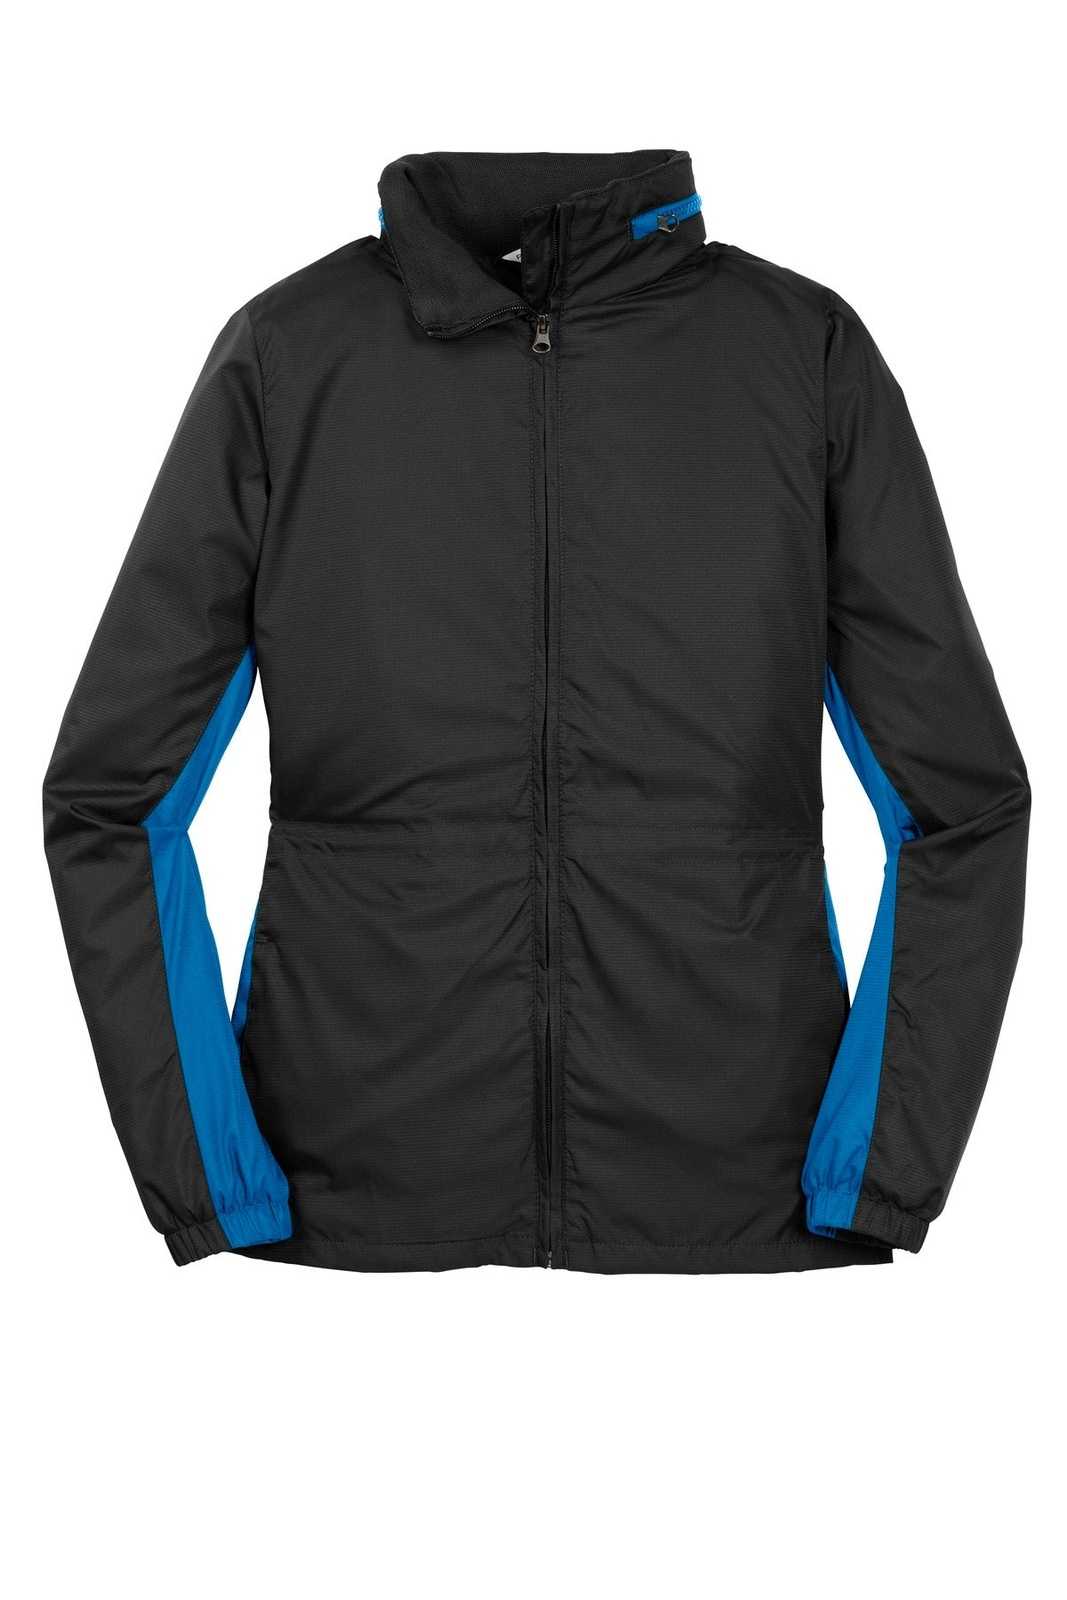 Port Authority L330 Ladies Core Colorblock Wind Jacket - Black Imperial Blue - HIT a Double - 5